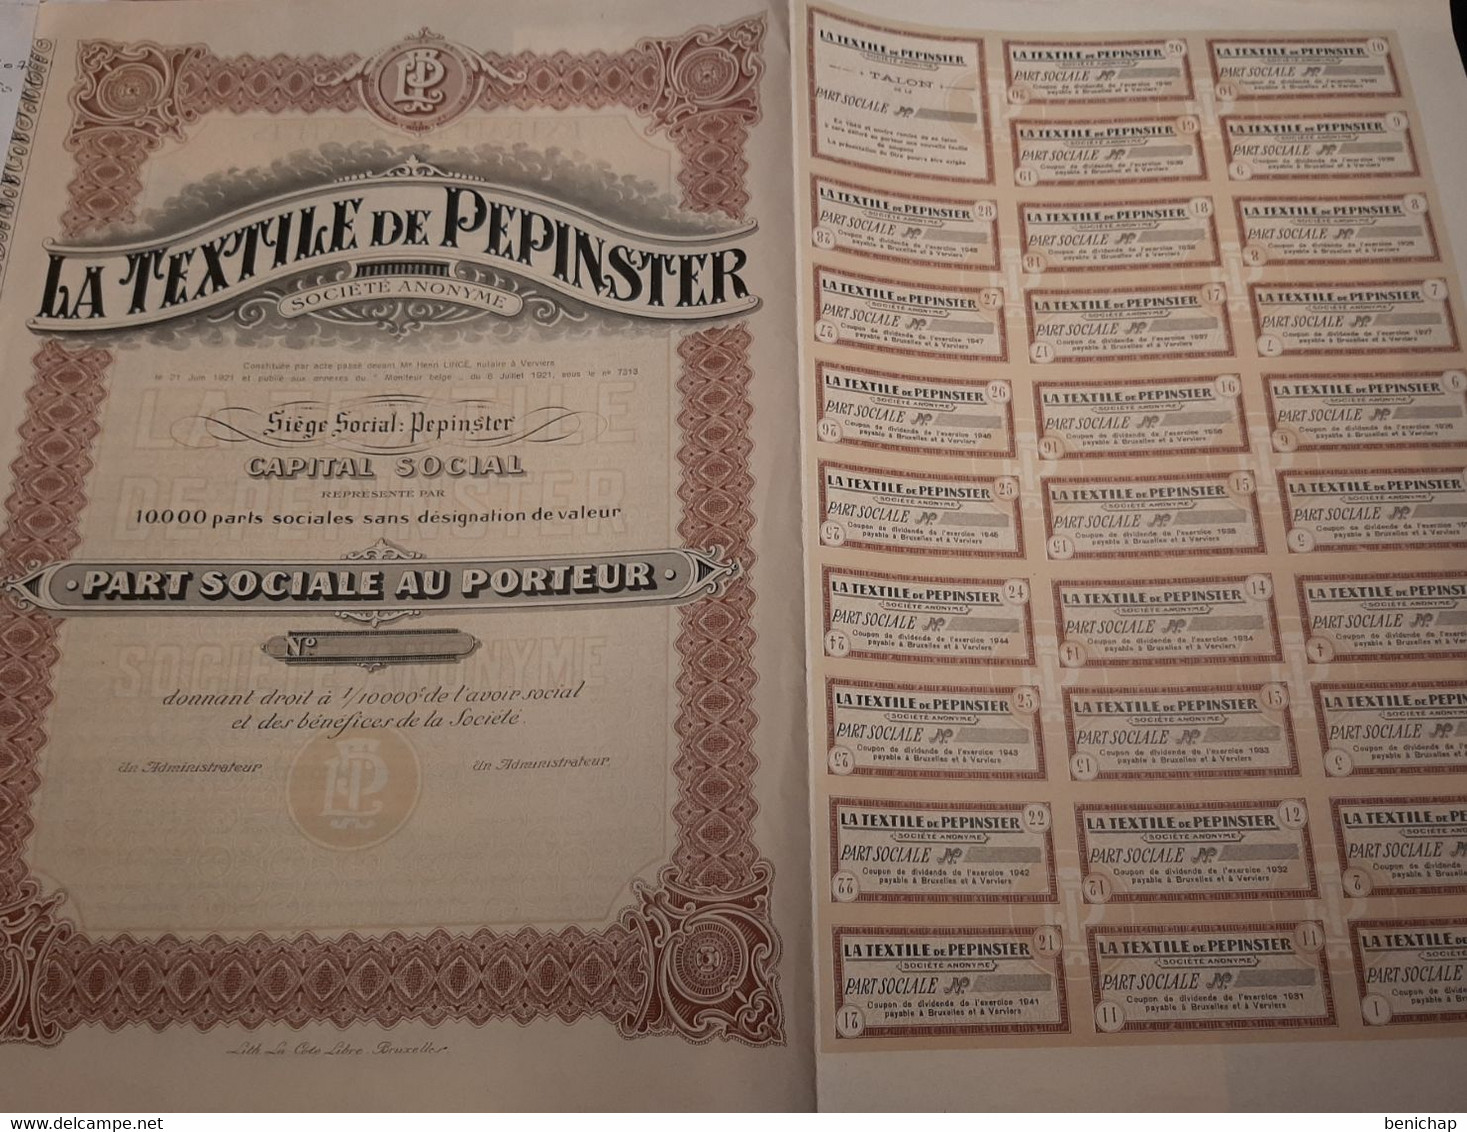 La Textile De Pepinster S.A. - Part Sociale Au Porteur - Pepinster 6 Juillet 1921. - Textil